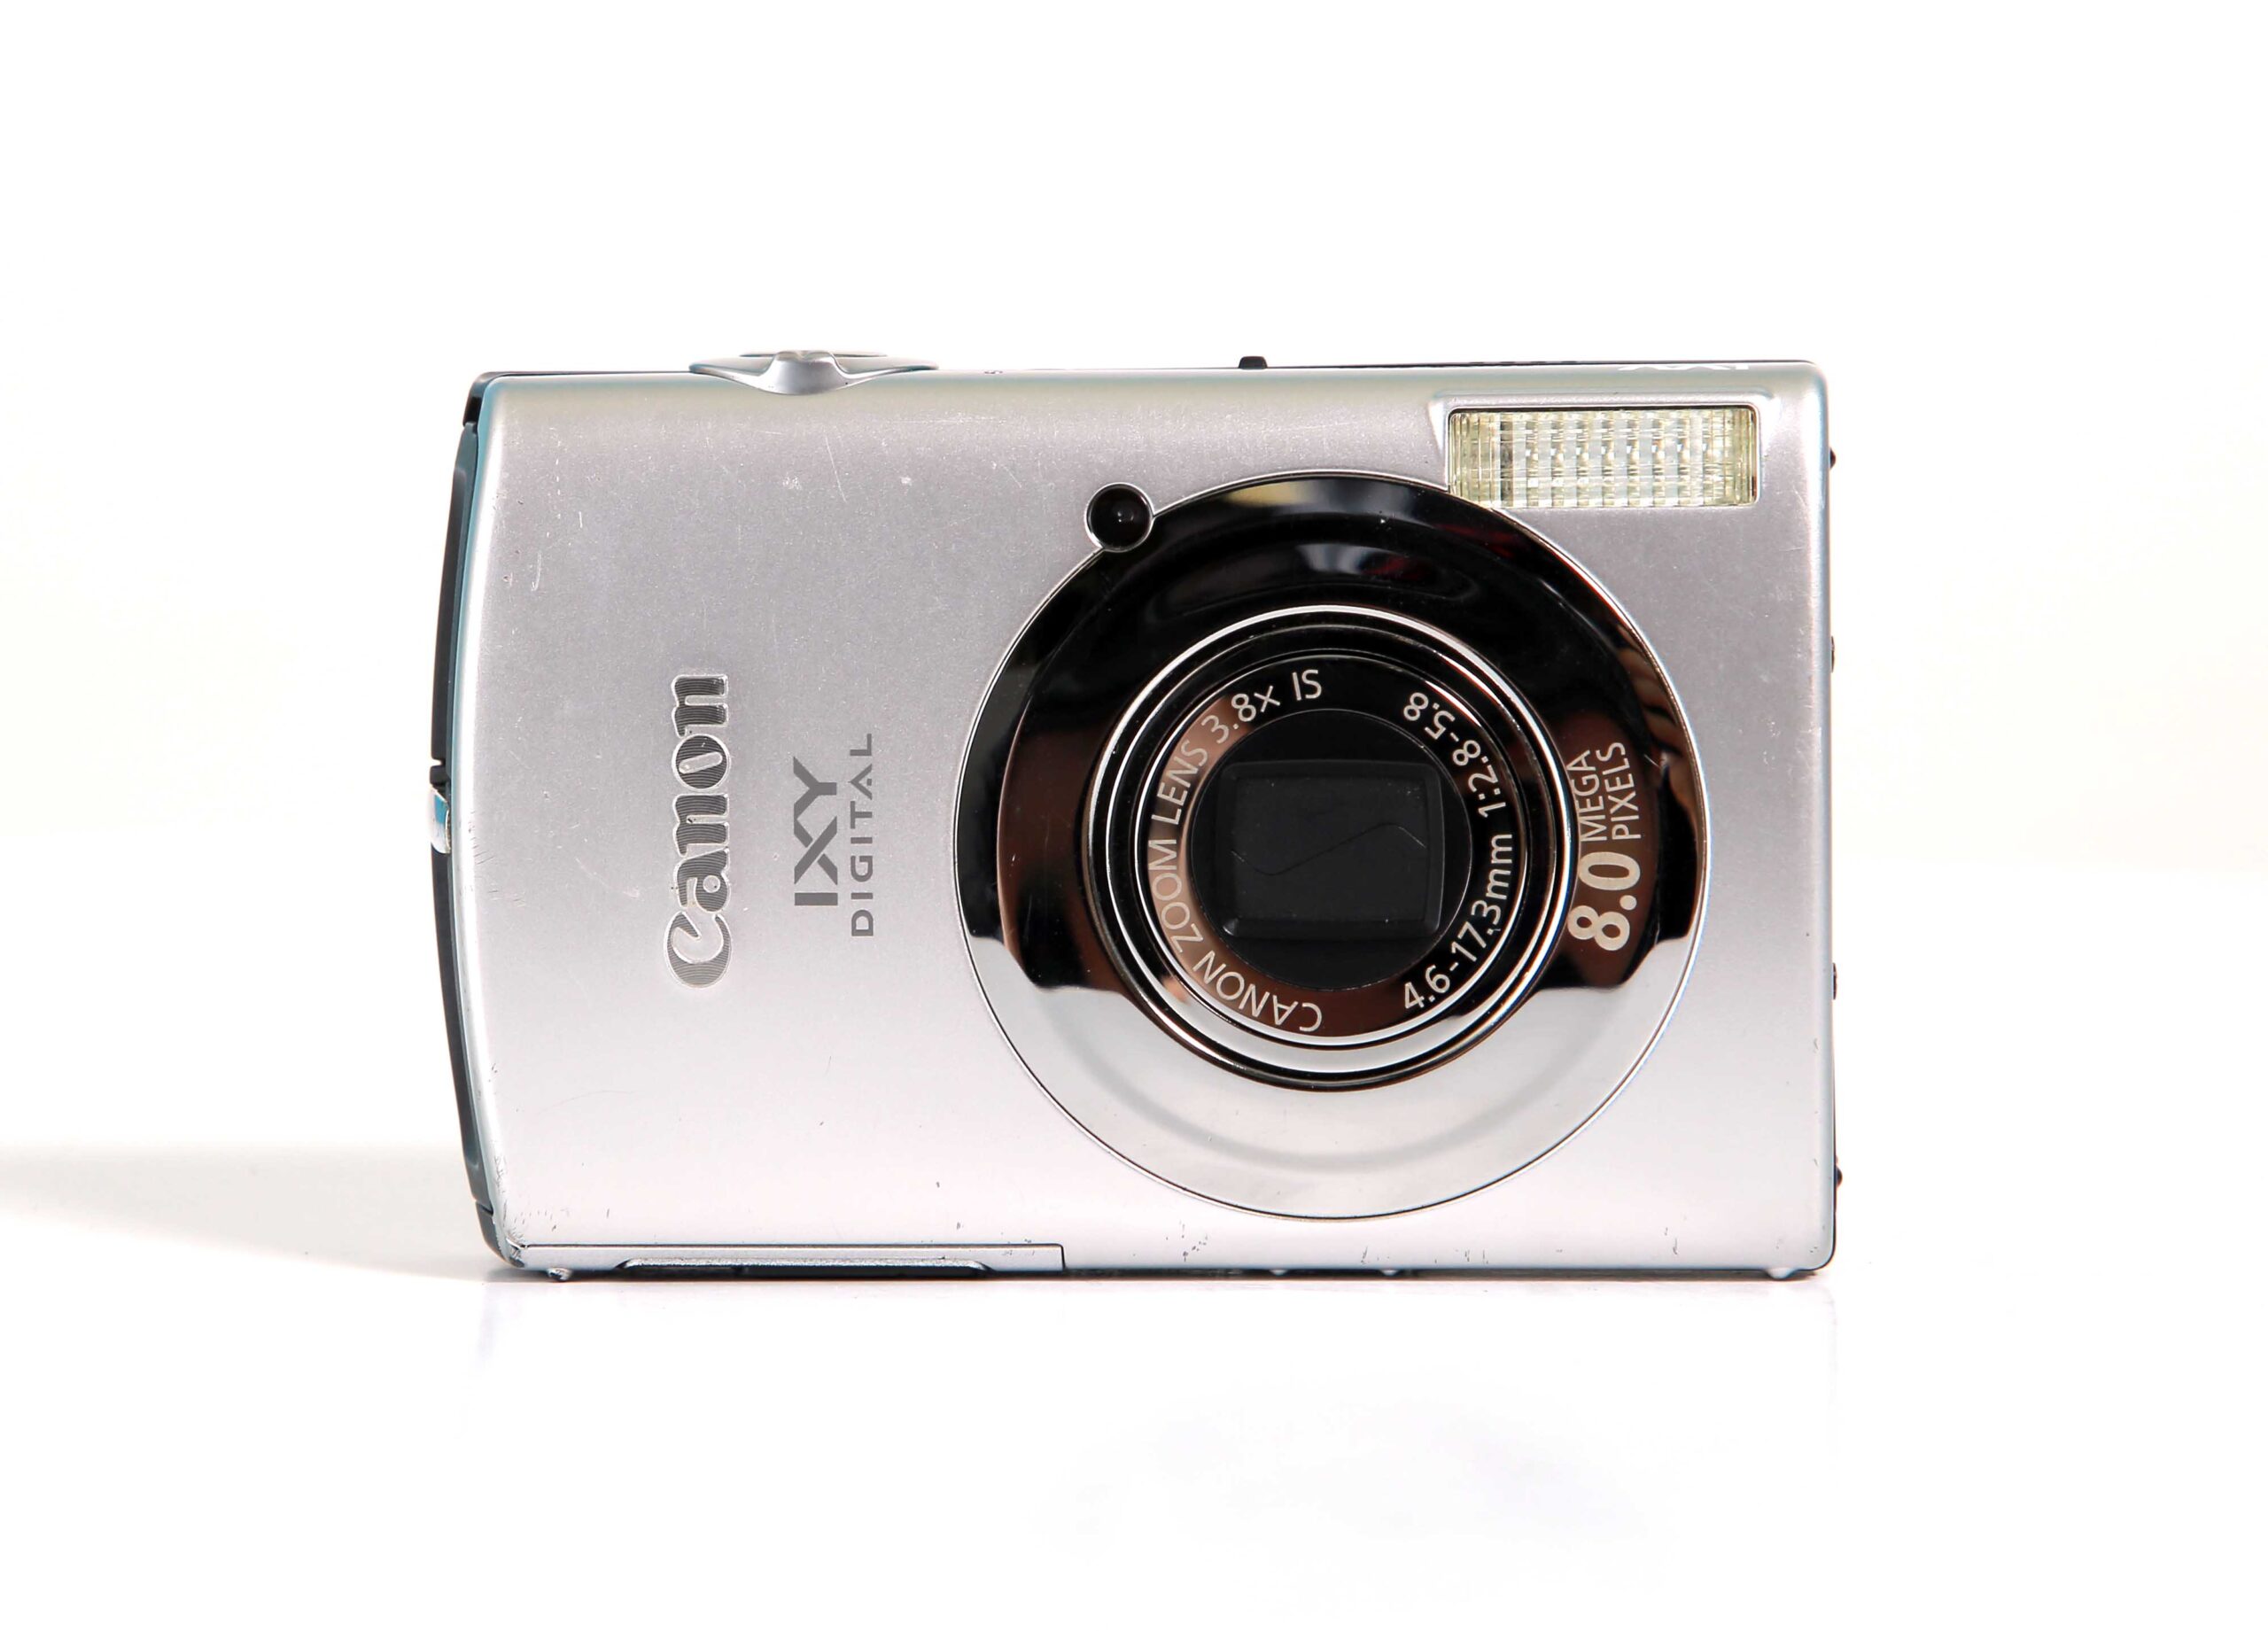 キヤノンCanon IXY DIGITAL 910 IS SL - デジタルカメラ